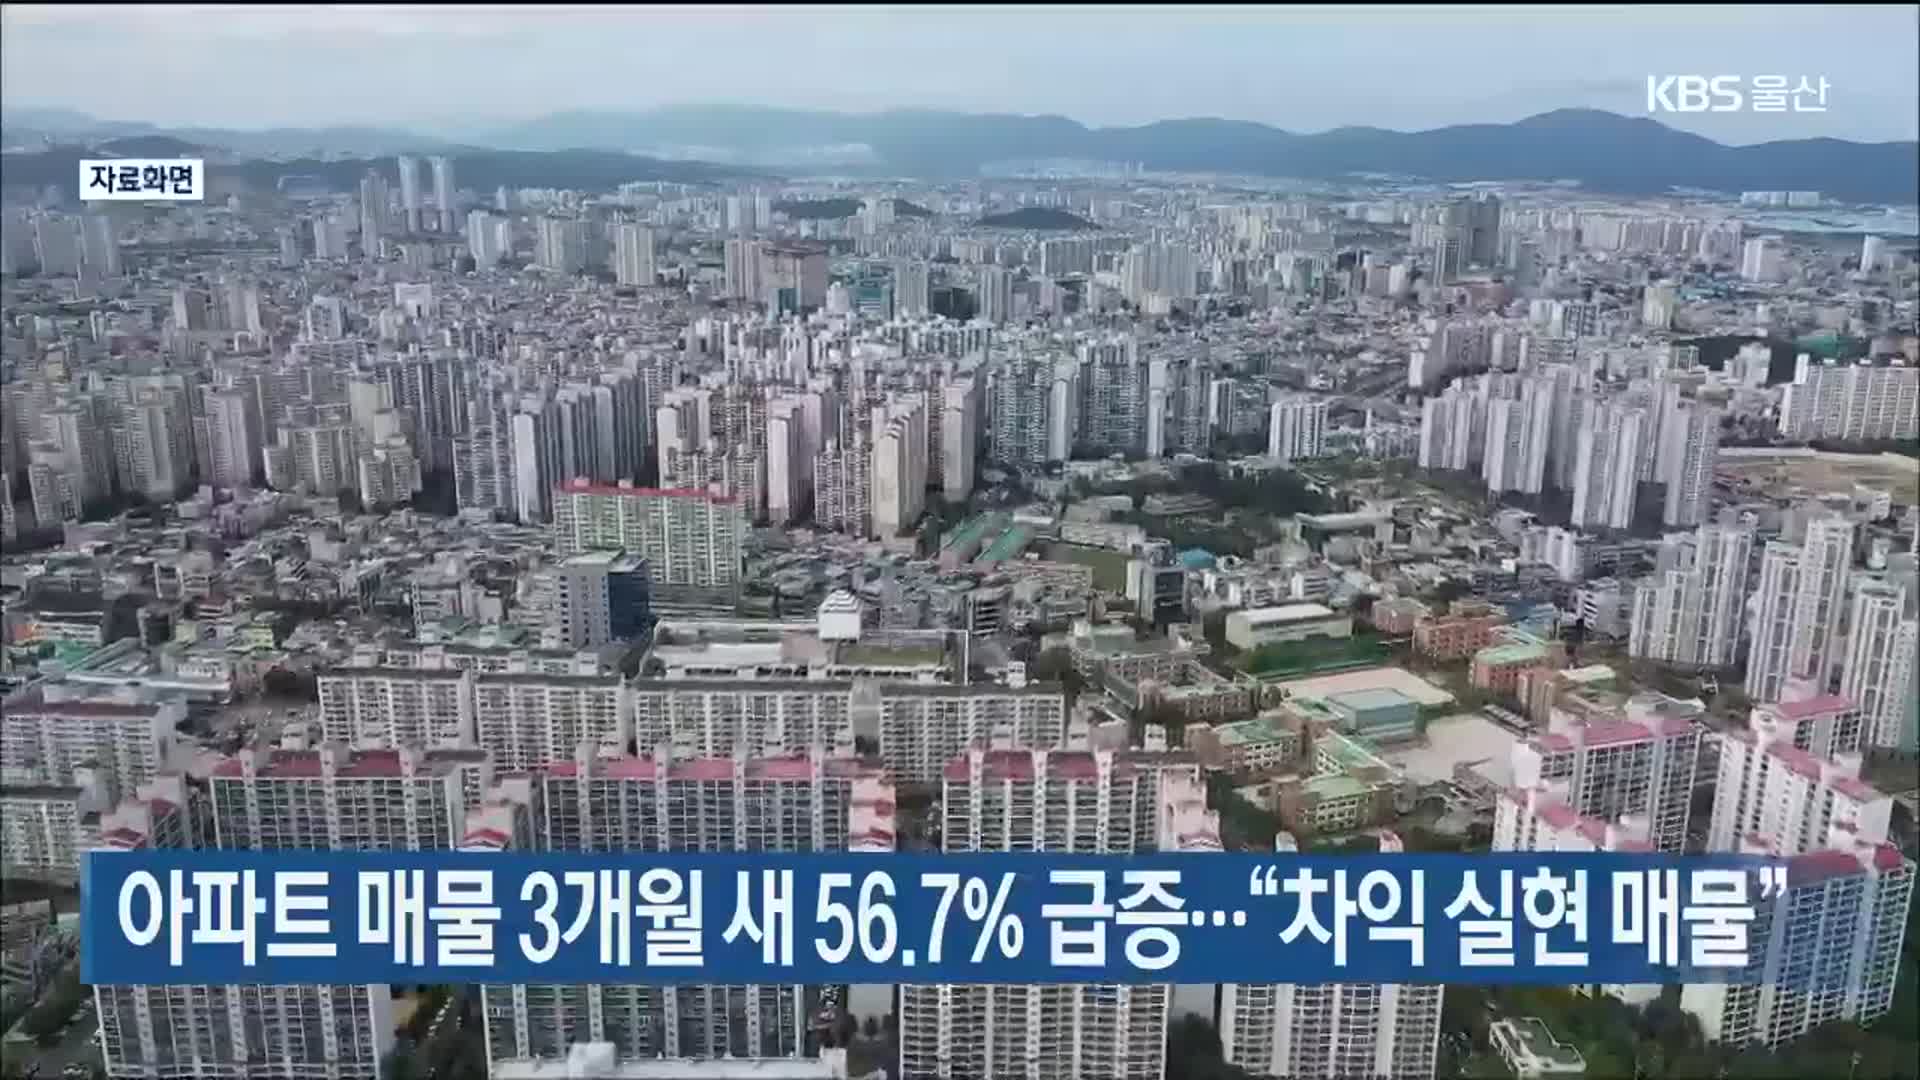 아파트 매물 3개월 새 56.7% 급증…“차익 실현 매물”